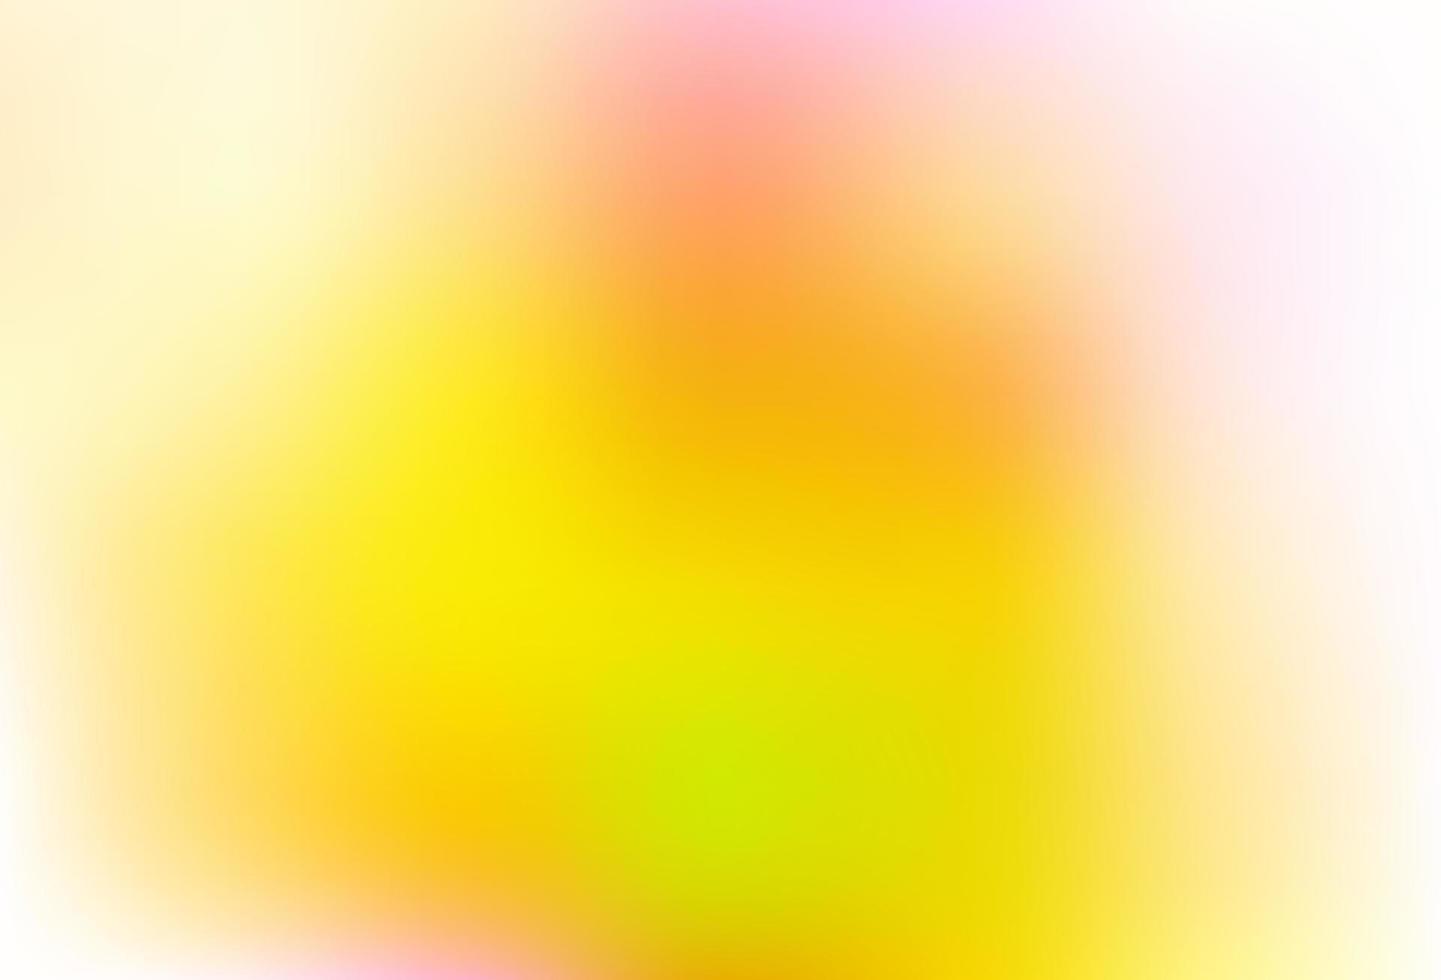 hellrosa, gelber Vektor abstrakter Hintergrund.